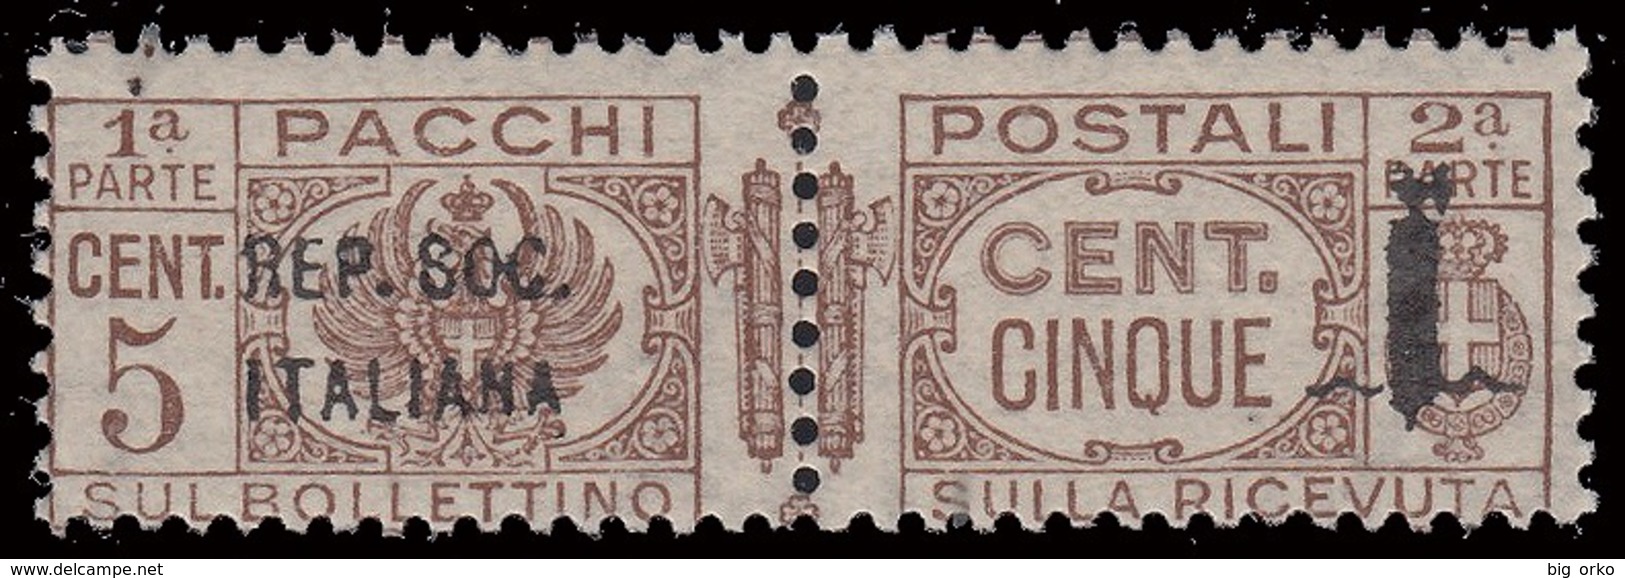 Italia: R.S.I. - Pacchi Postali: 5 C. Bruno - 1944 - Colis-postaux